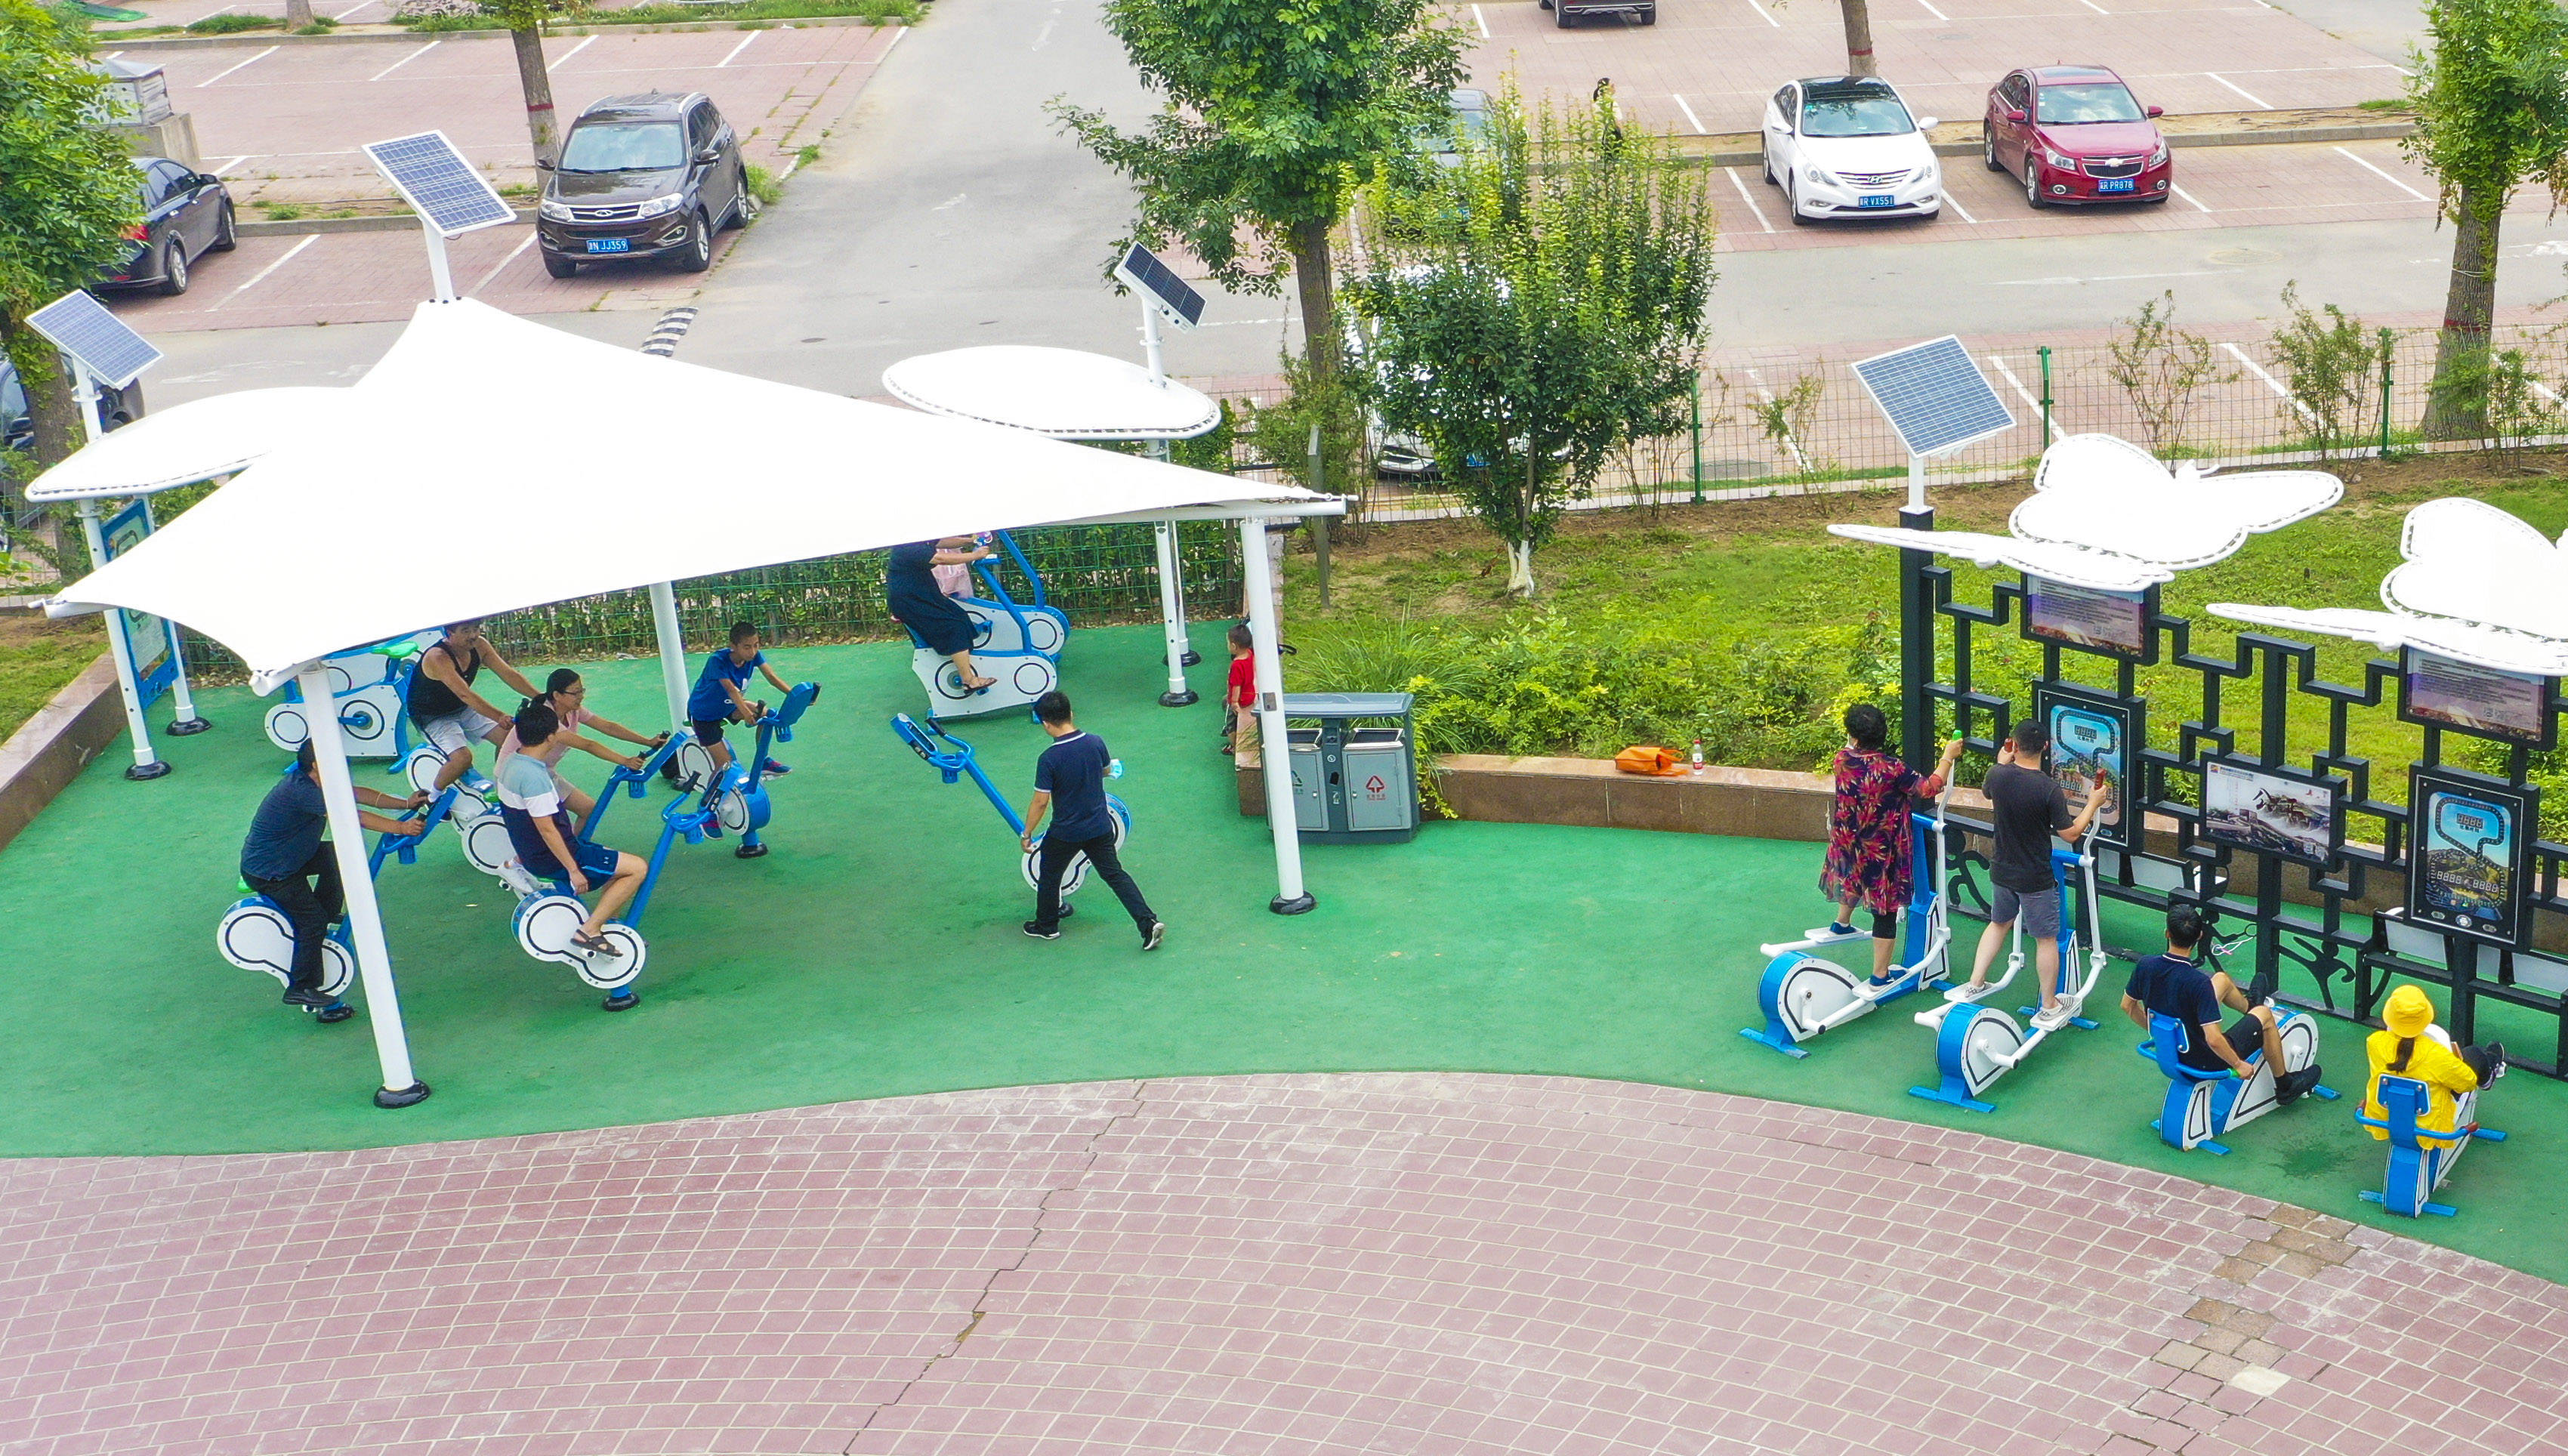 7月5日,在河北省廊坊市广阳区一处健身公园,市民使用智能健身器材锻炼